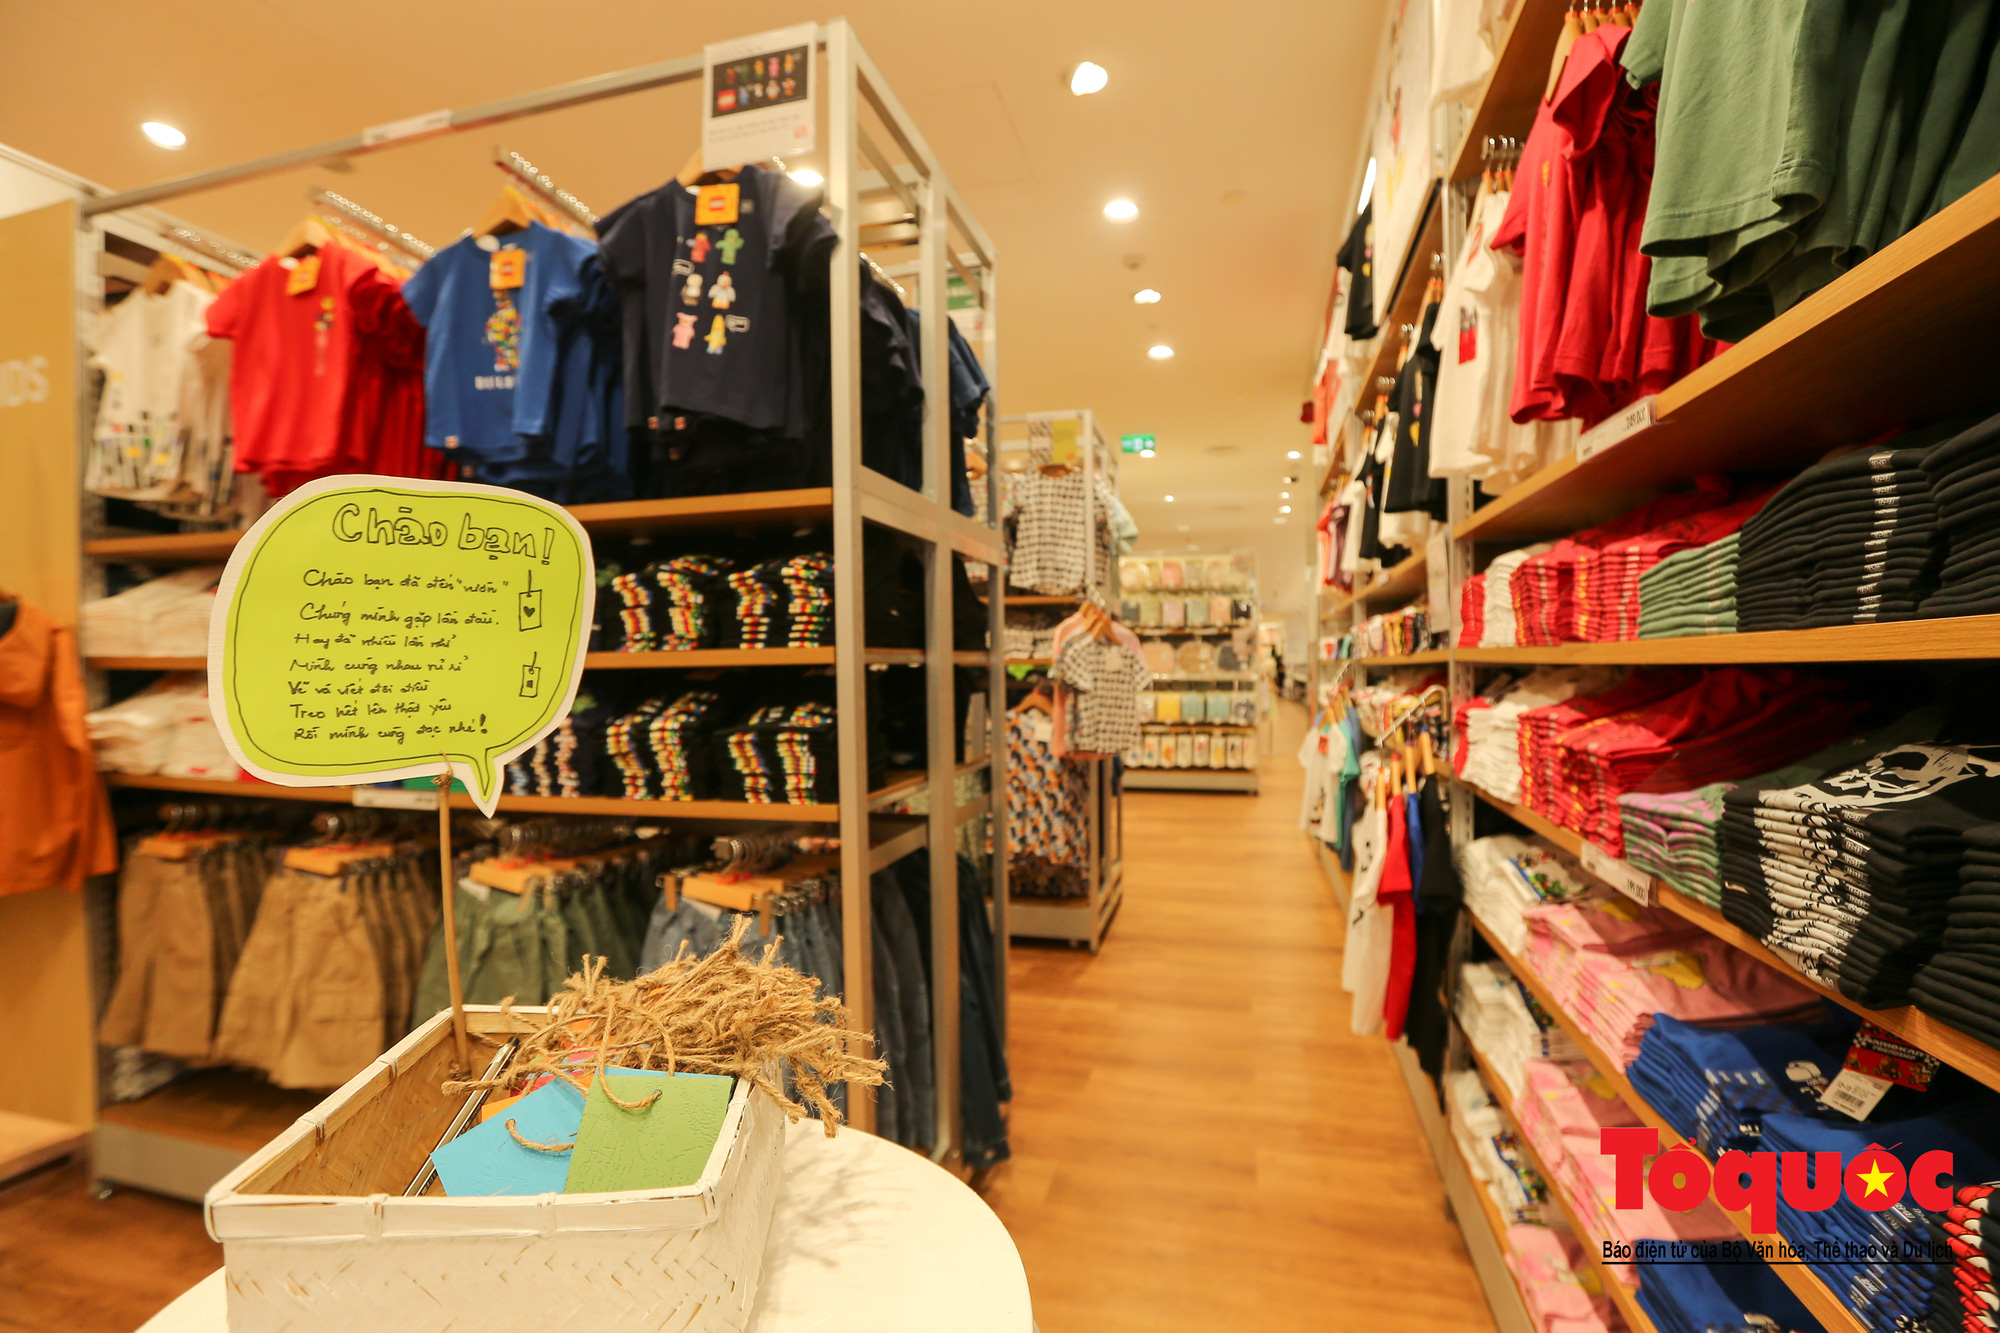 UNIQLO Aeon Mall Bình Dương Canary chính thức khai trương